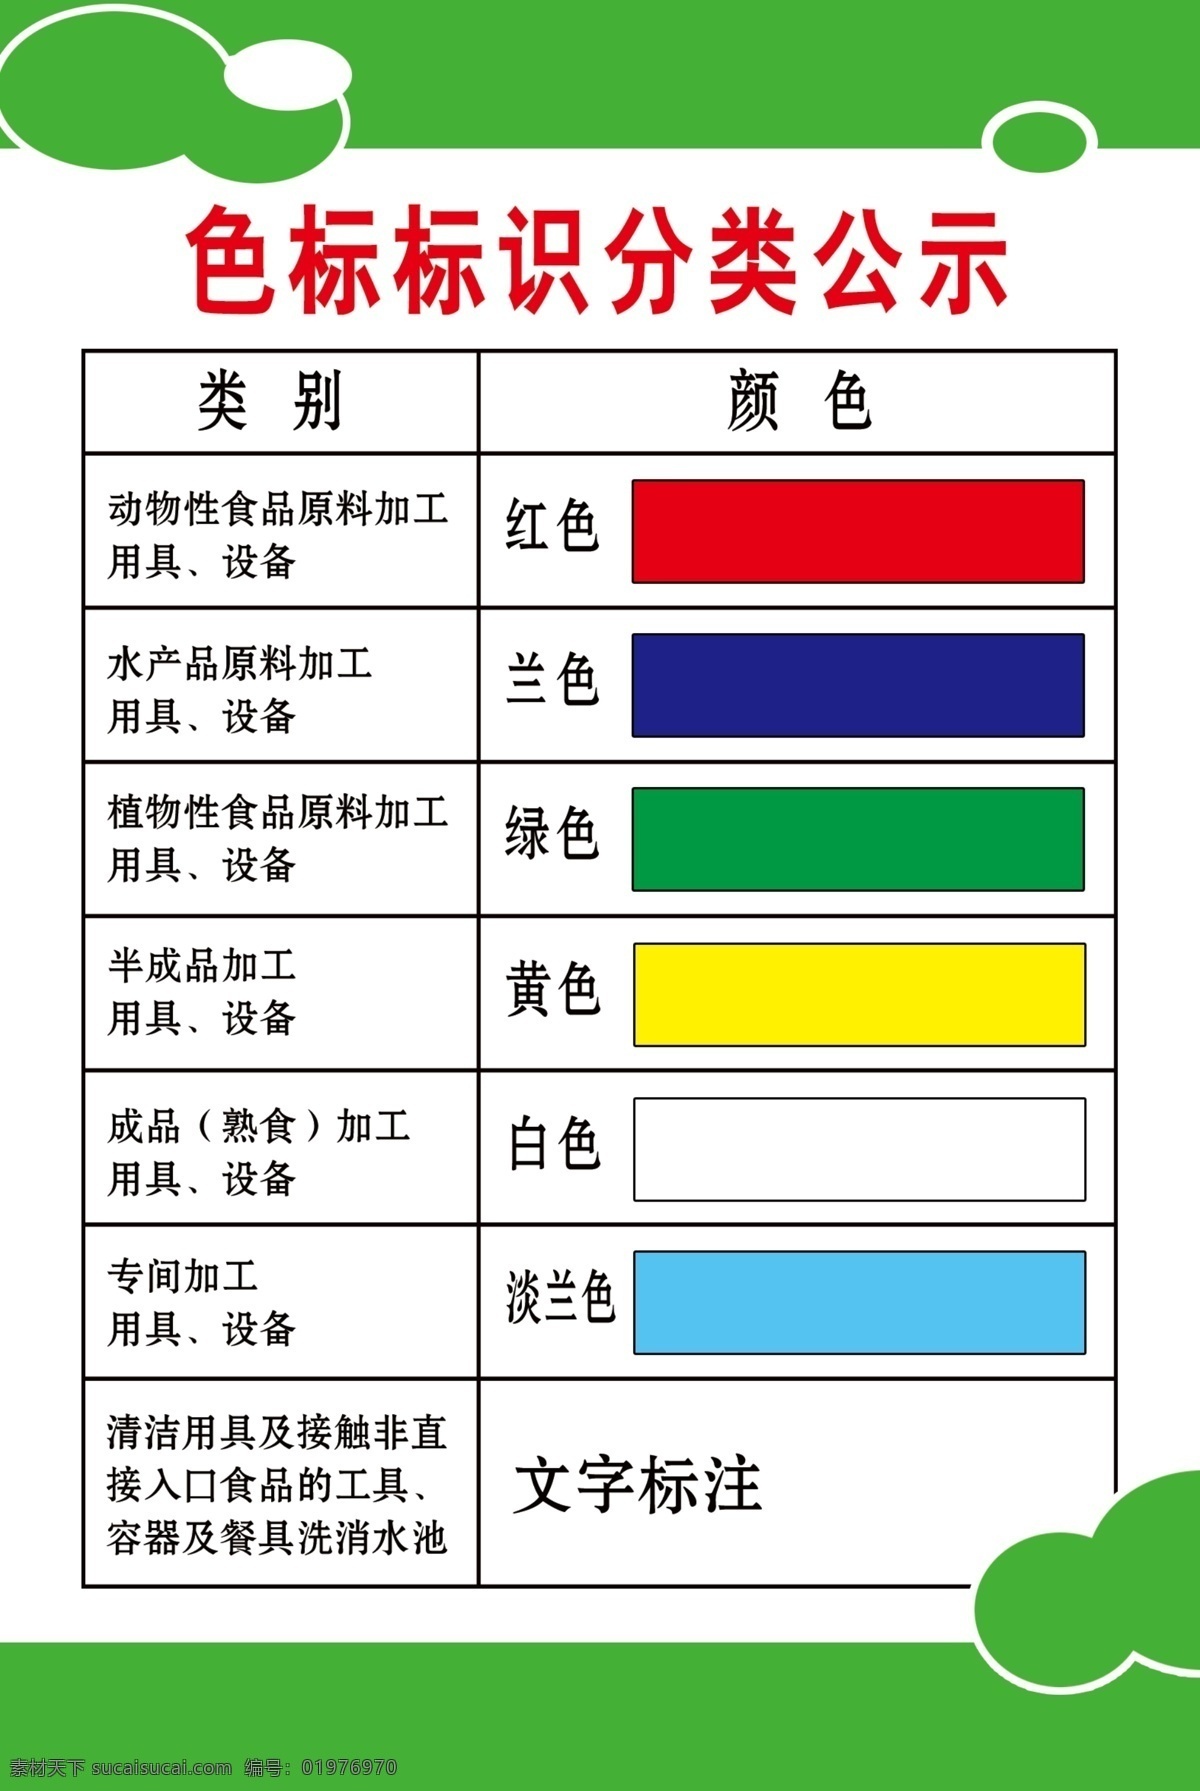 食品 色标 分类 公示 食品色标标识 食品色标 分类公示 色值 展板模板